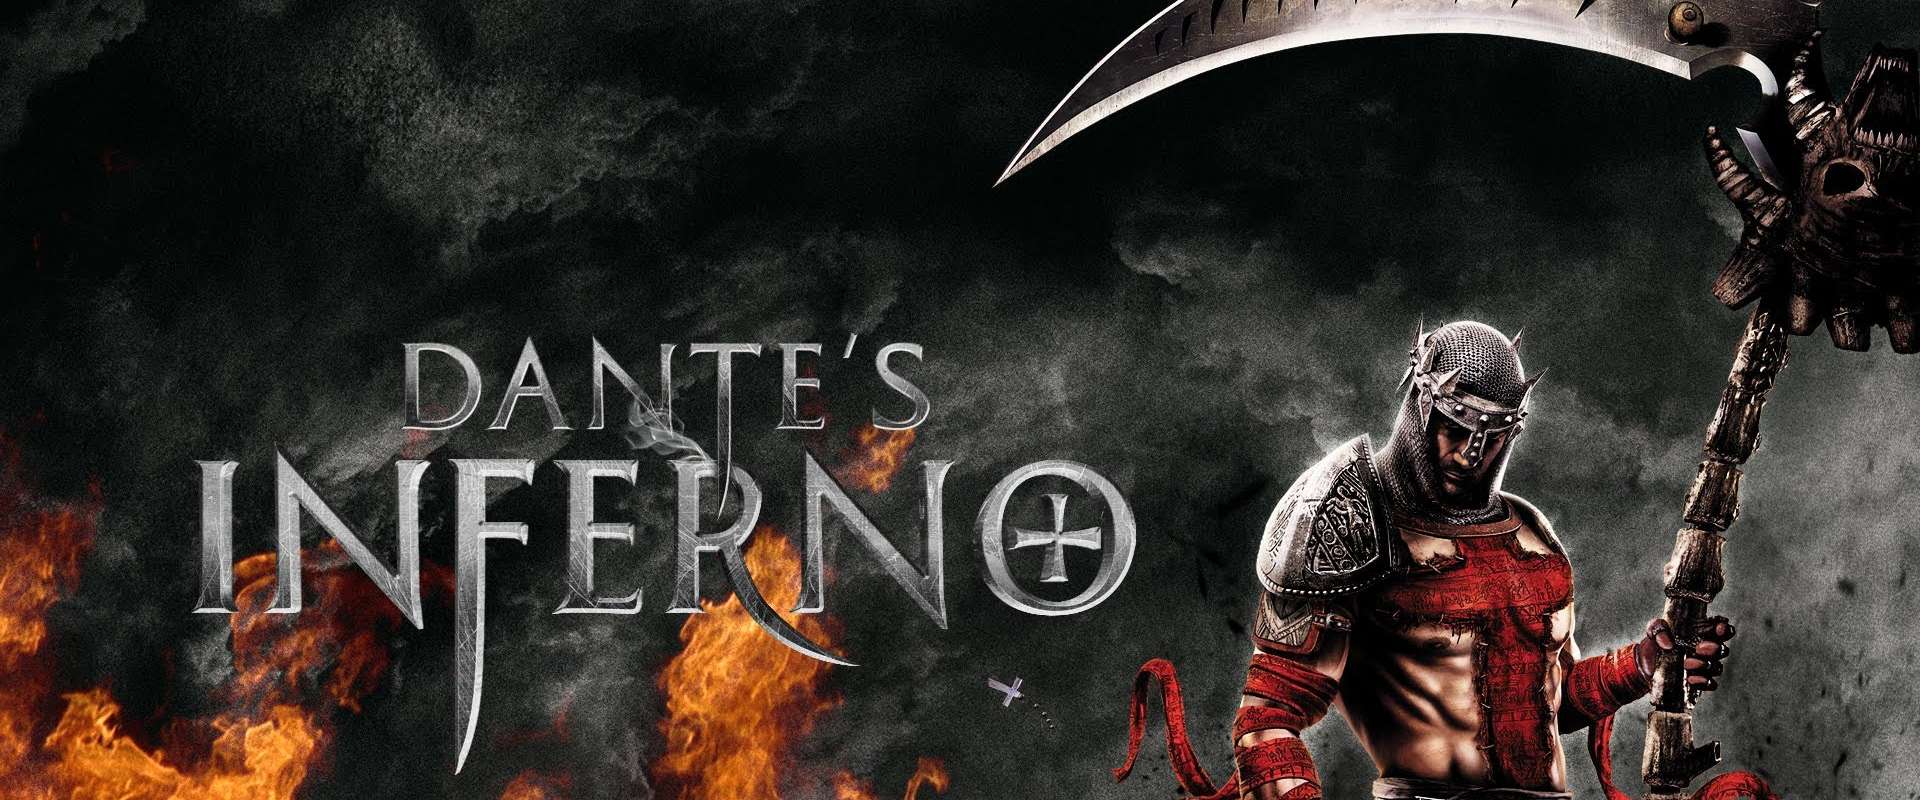 Dantes Inferno Dublado e legendado em português no Android